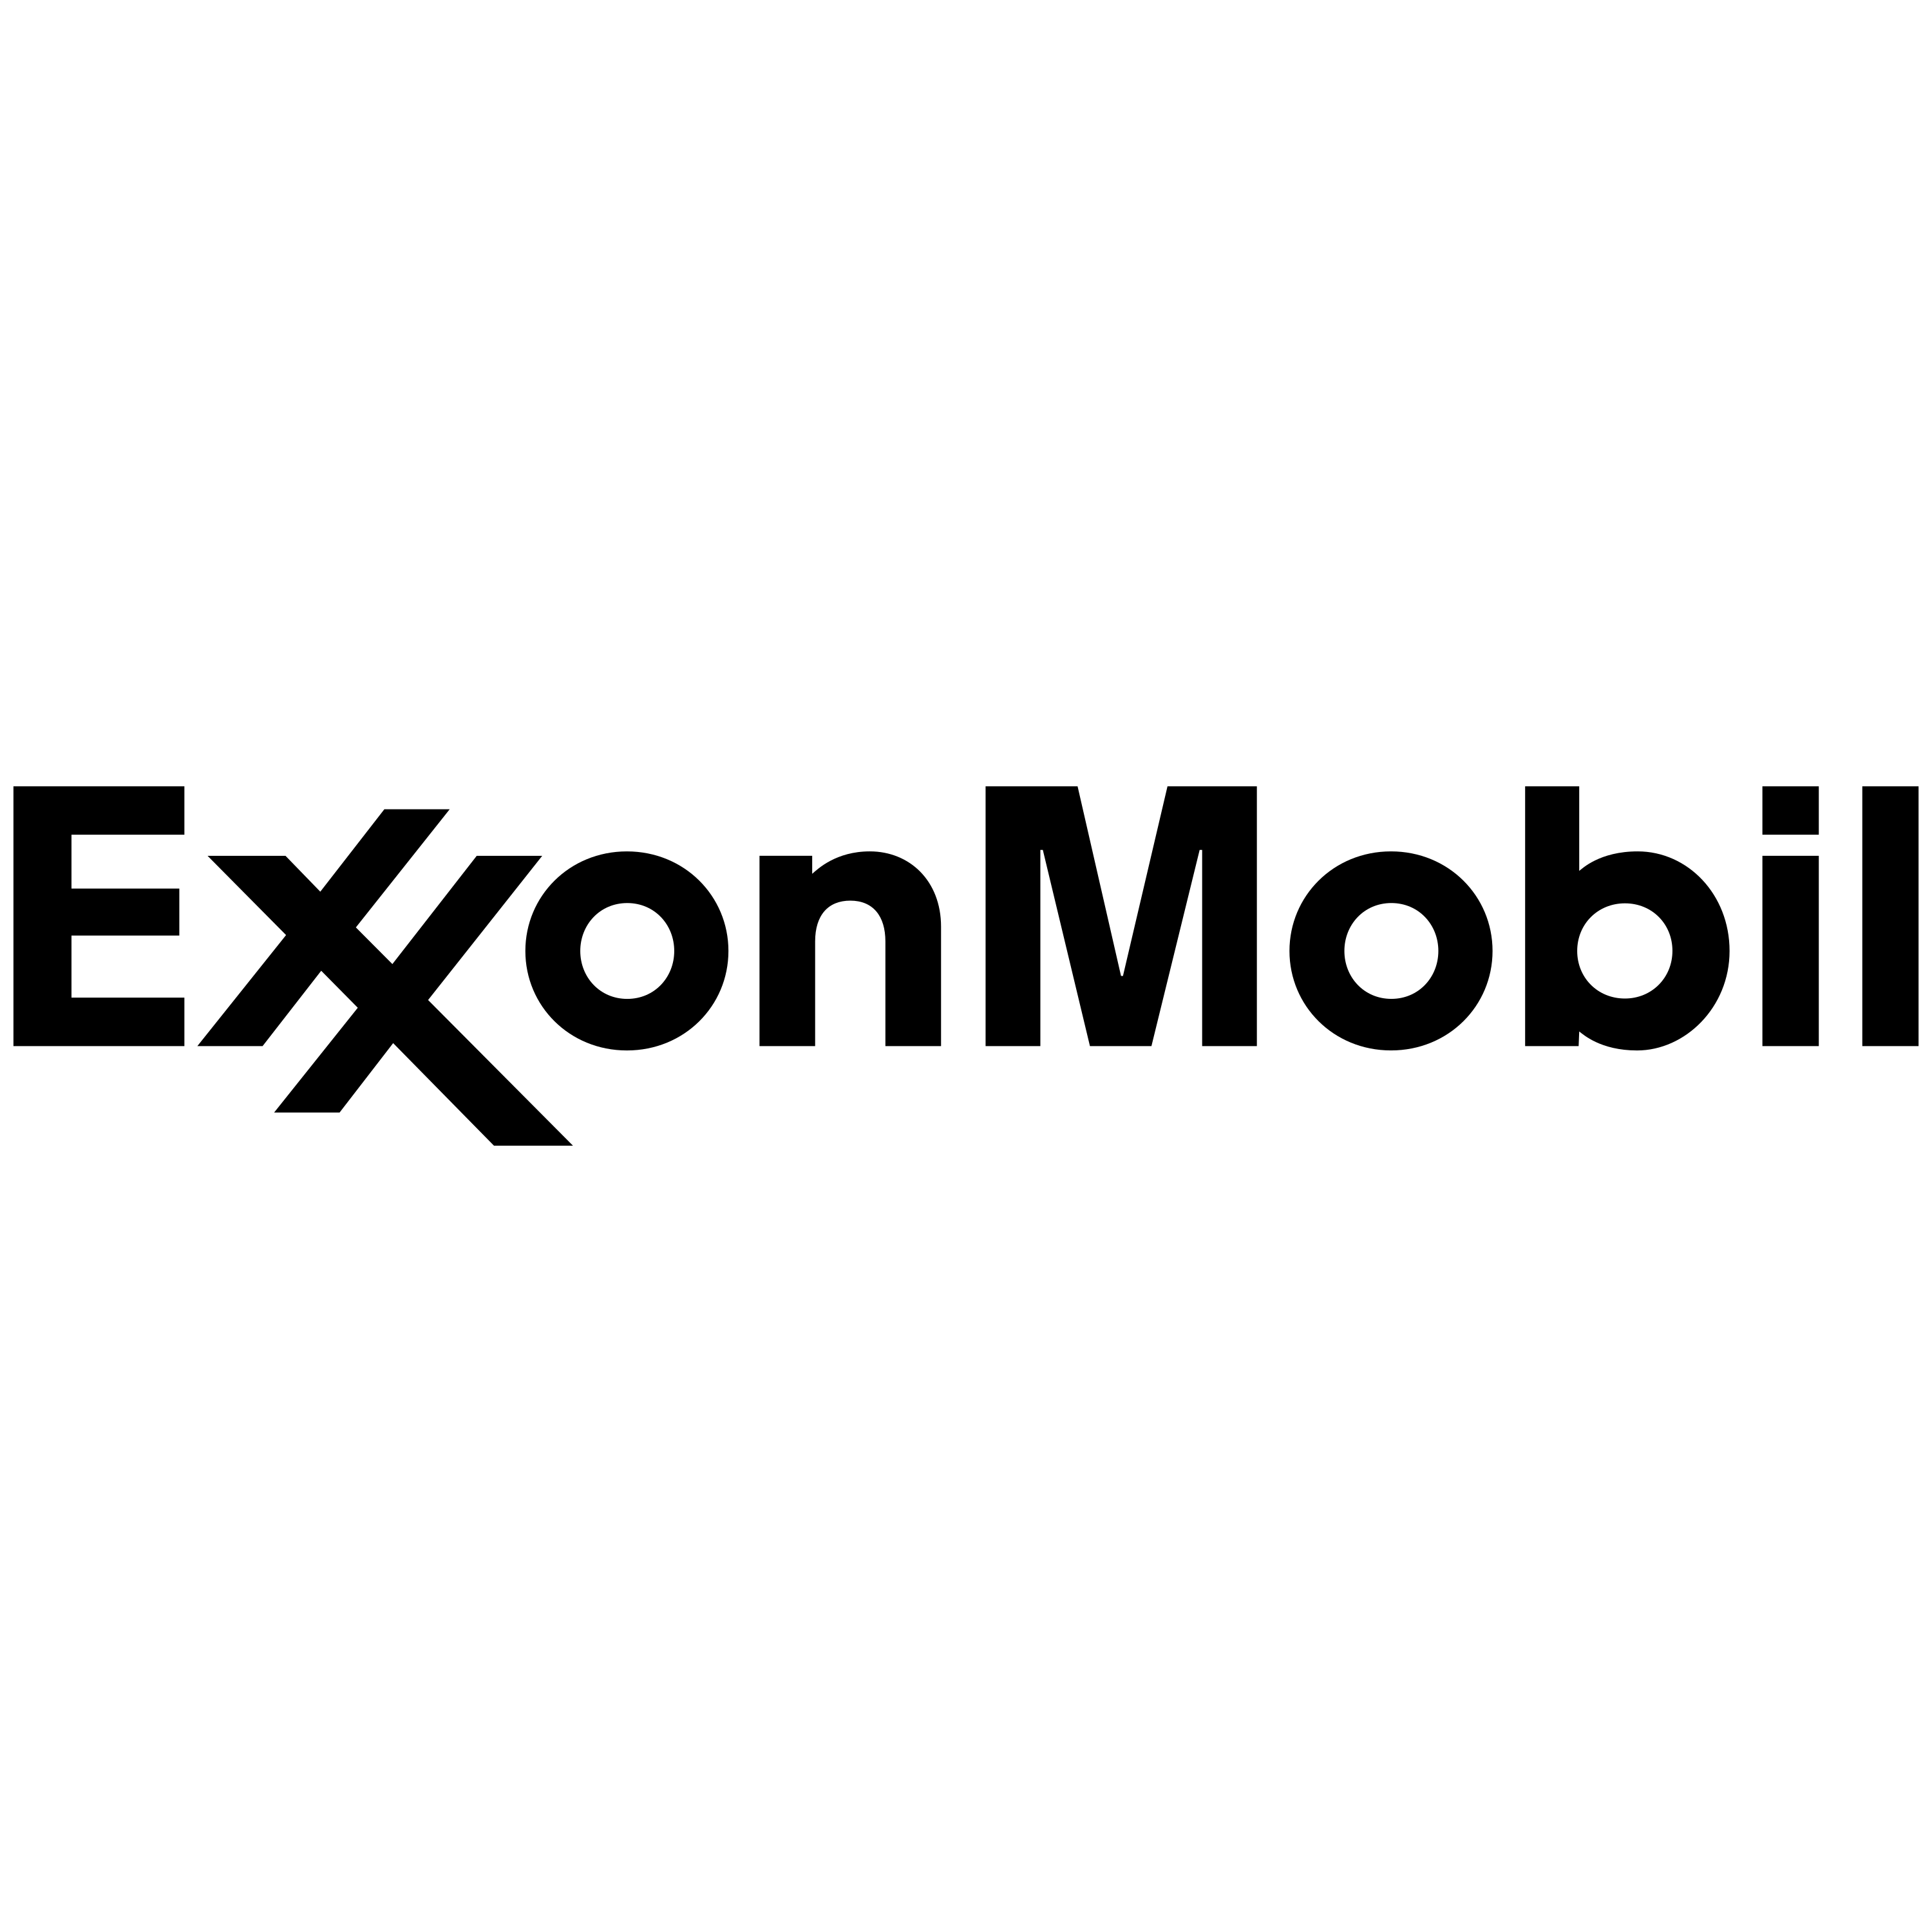 Exxonmobil Logo Transparent Photo